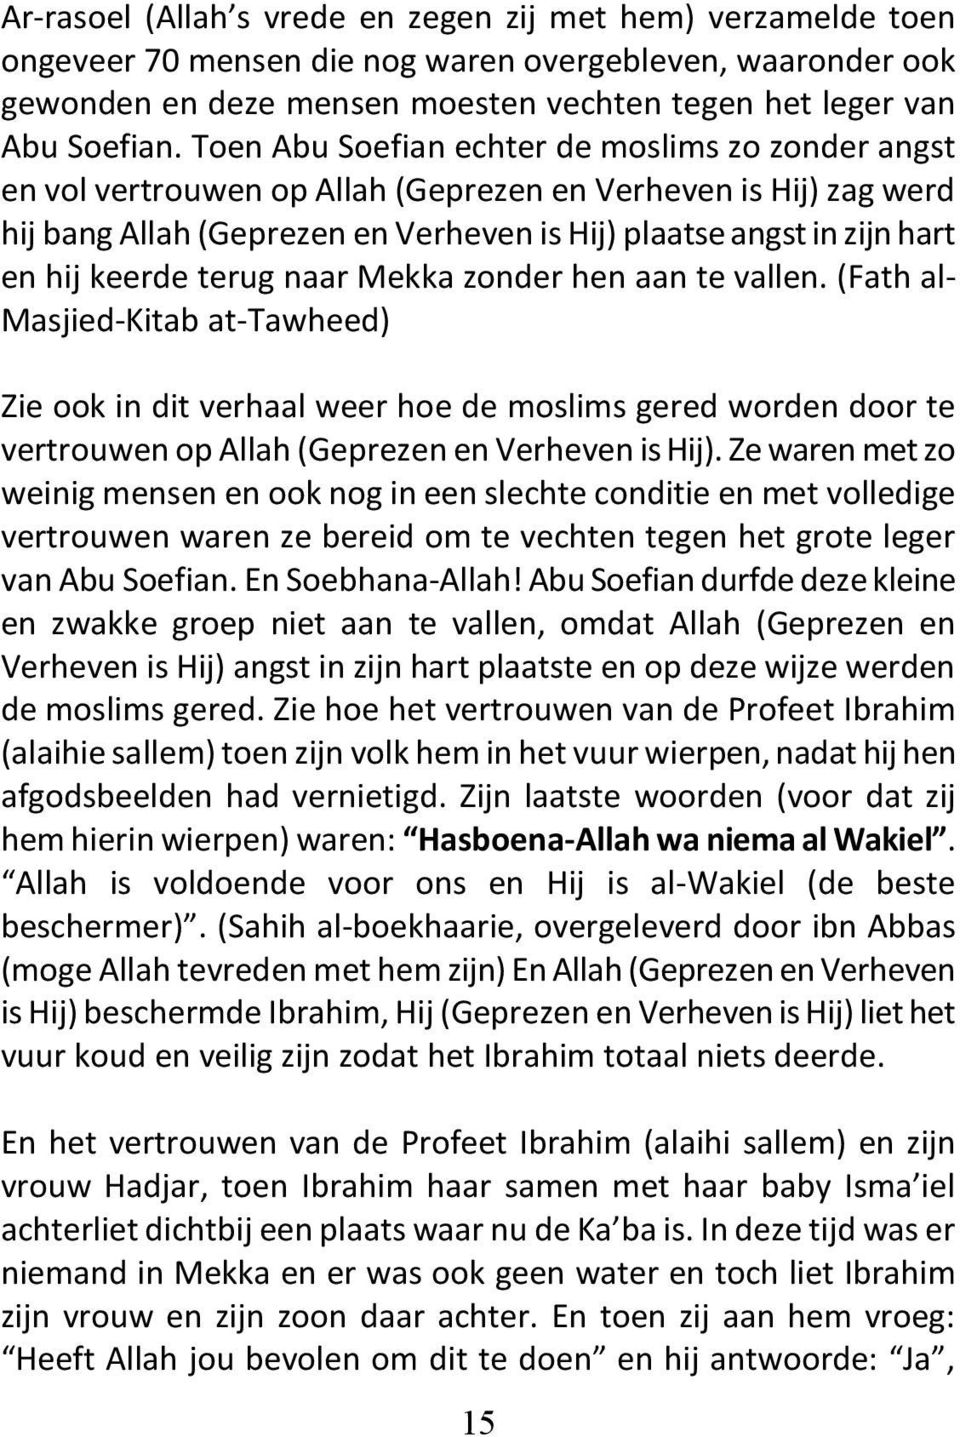 keerde terug naar Mekka zonder hen aan te vallen. (Fath al- Masjied-Kitab at-tawheed) Zie ook in dit verhaal weer hoe de moslims gered worden door te vertrouwen op Allah (Geprezen en Verheven is Hij).